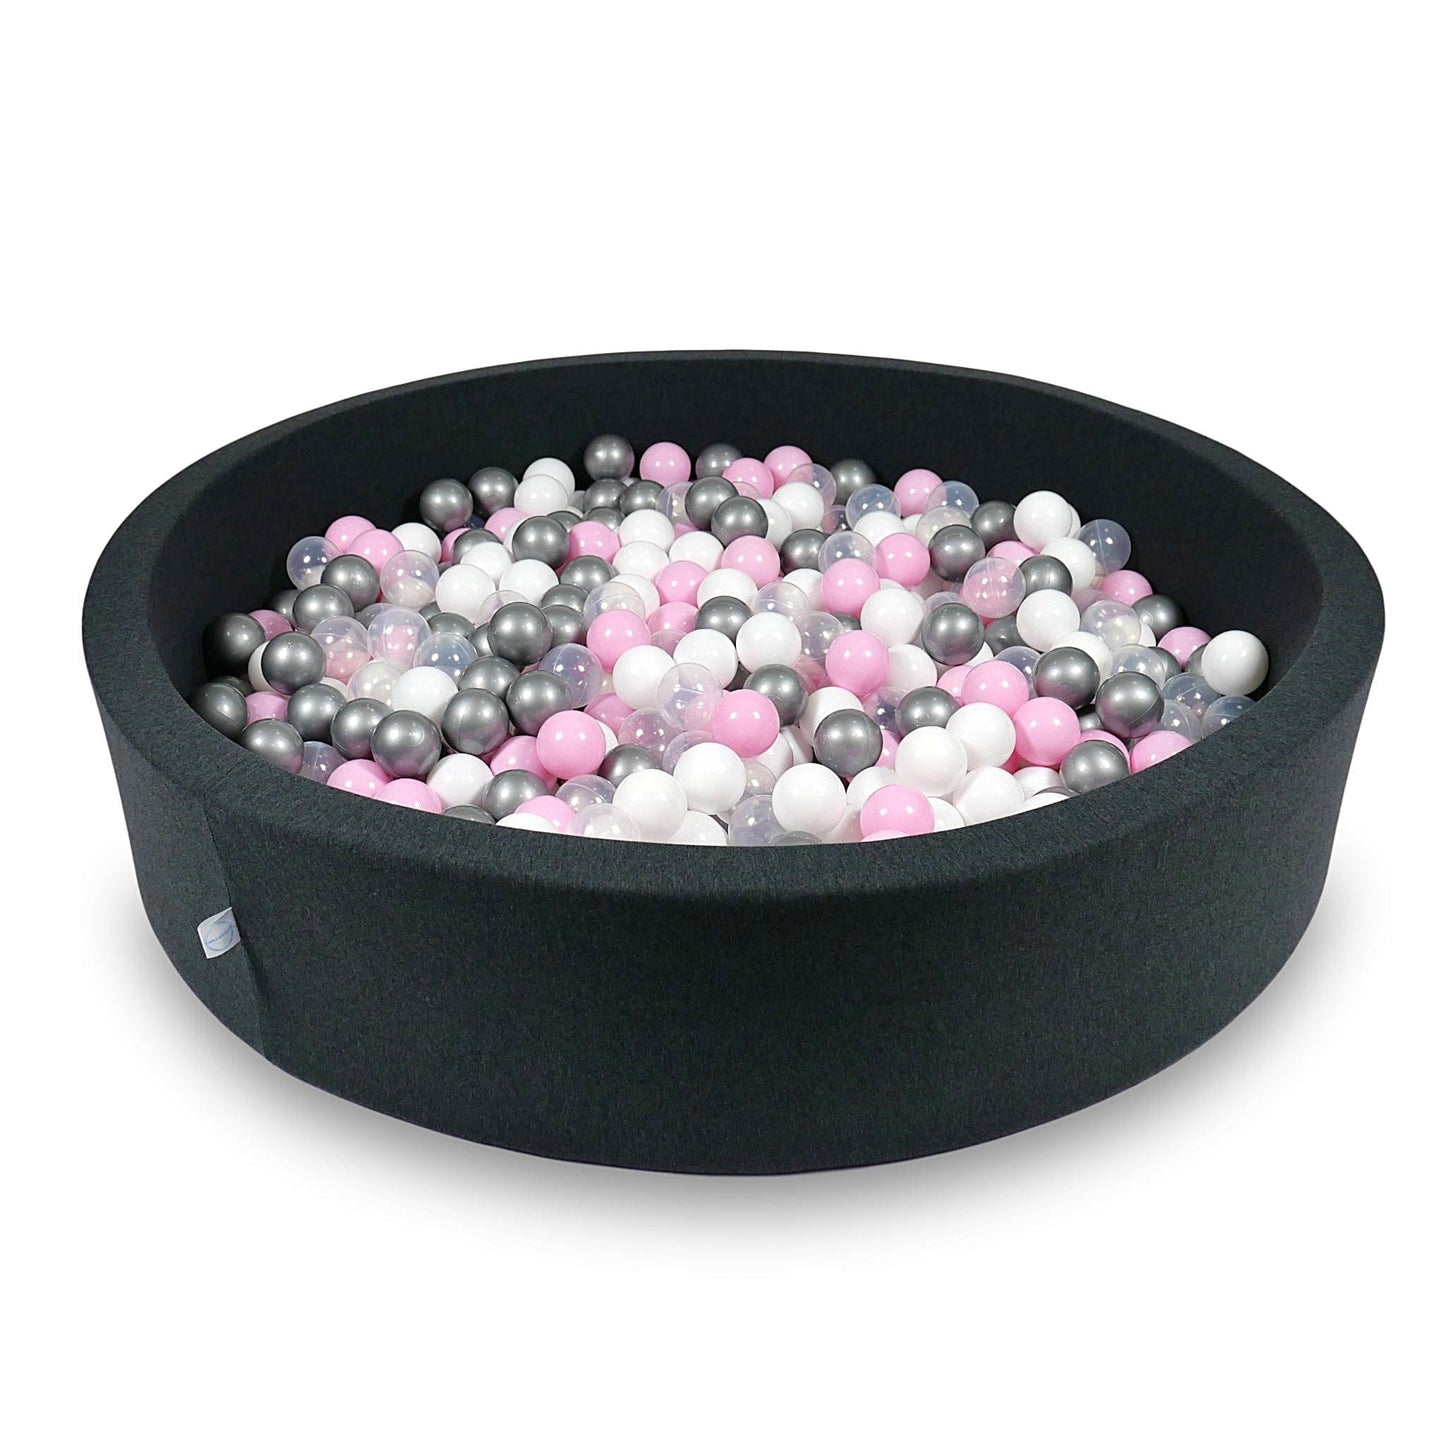 Piscine à Balles 130x30cm graphite avec balles 600pcs (rose clair, blanc, argent, transparent)